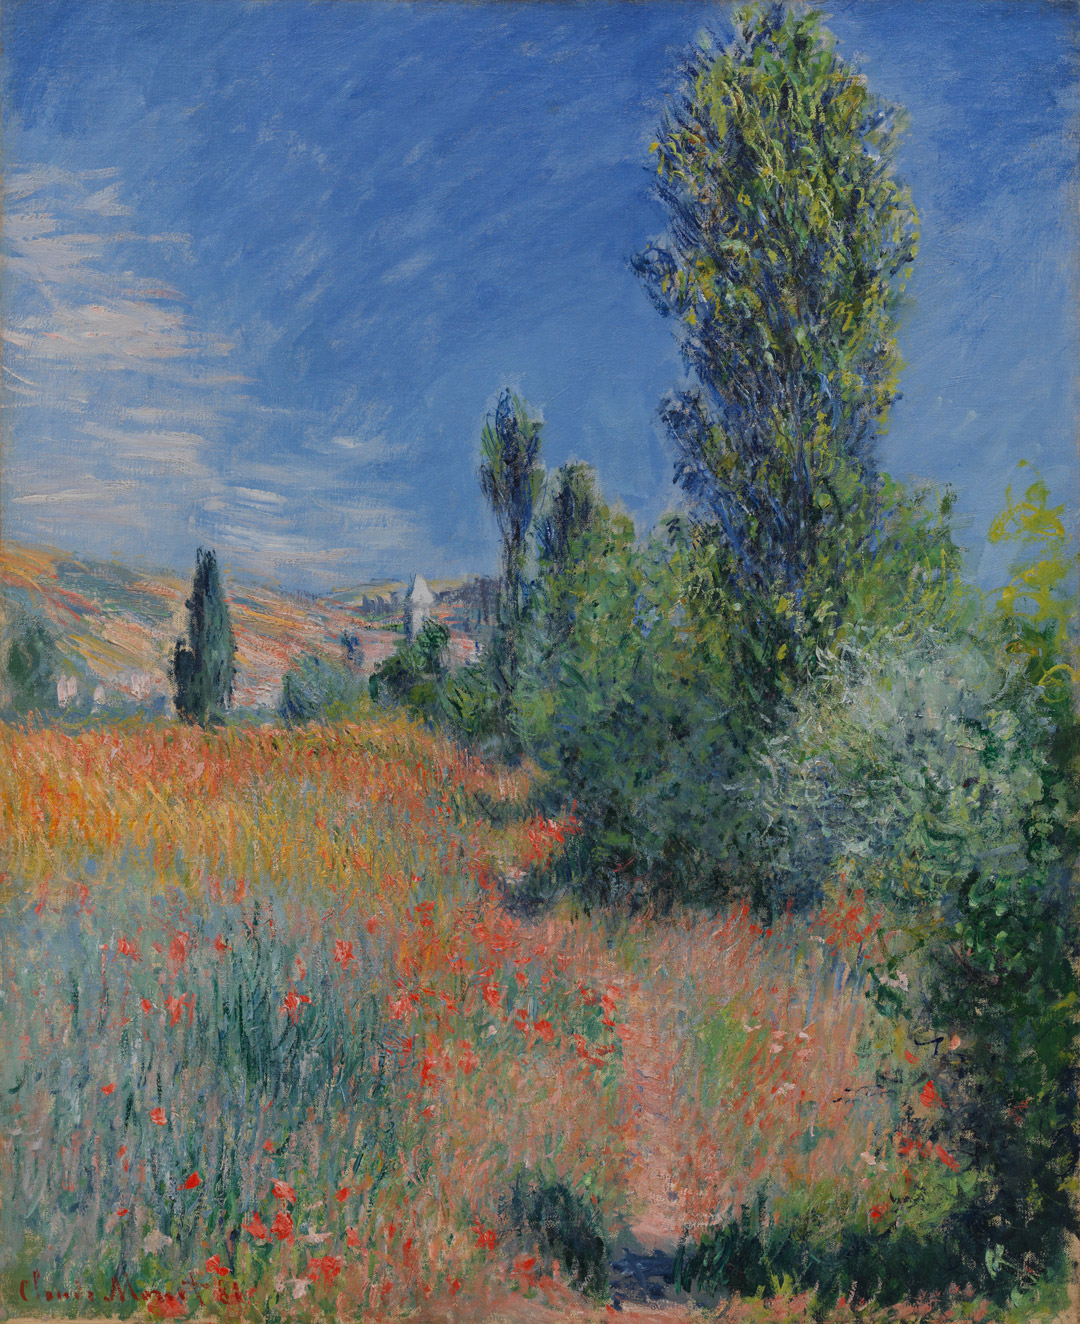 Landscape on île Saint-Martin, Claude Monet, 1881.